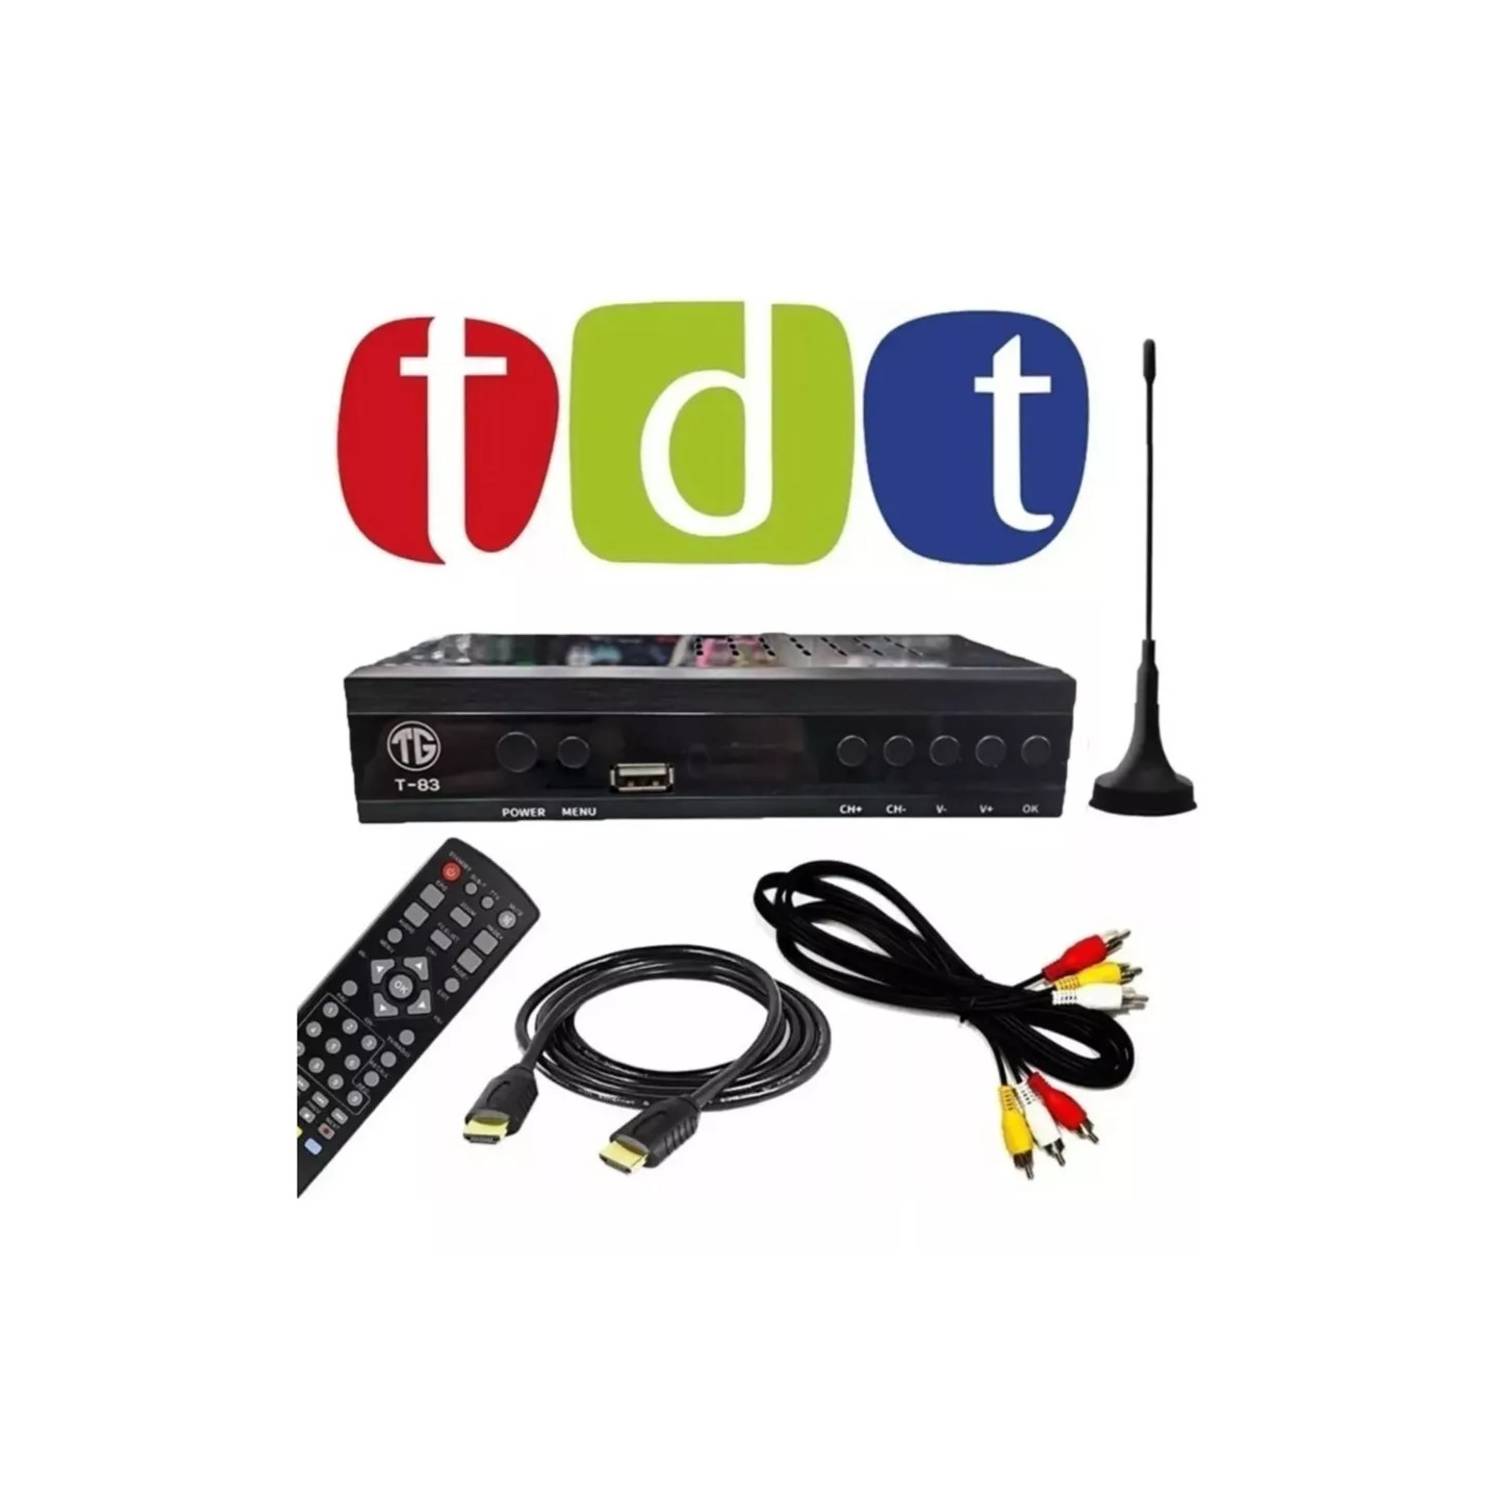 Decodificador Tdt Receptor Tv Digital T2 Antena - Lo Nuevo y Diferente